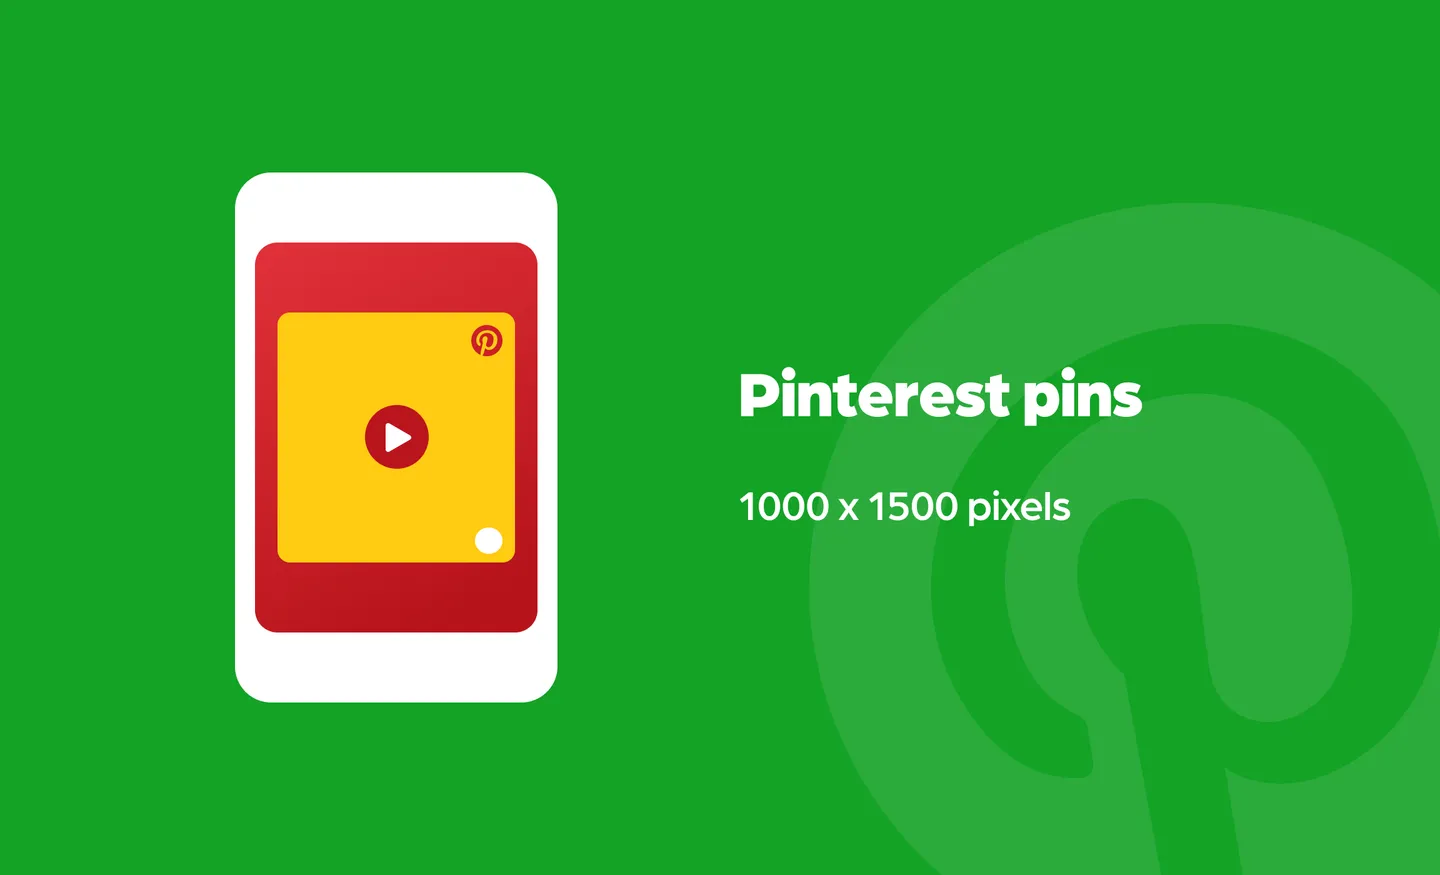 Pinterest pins size